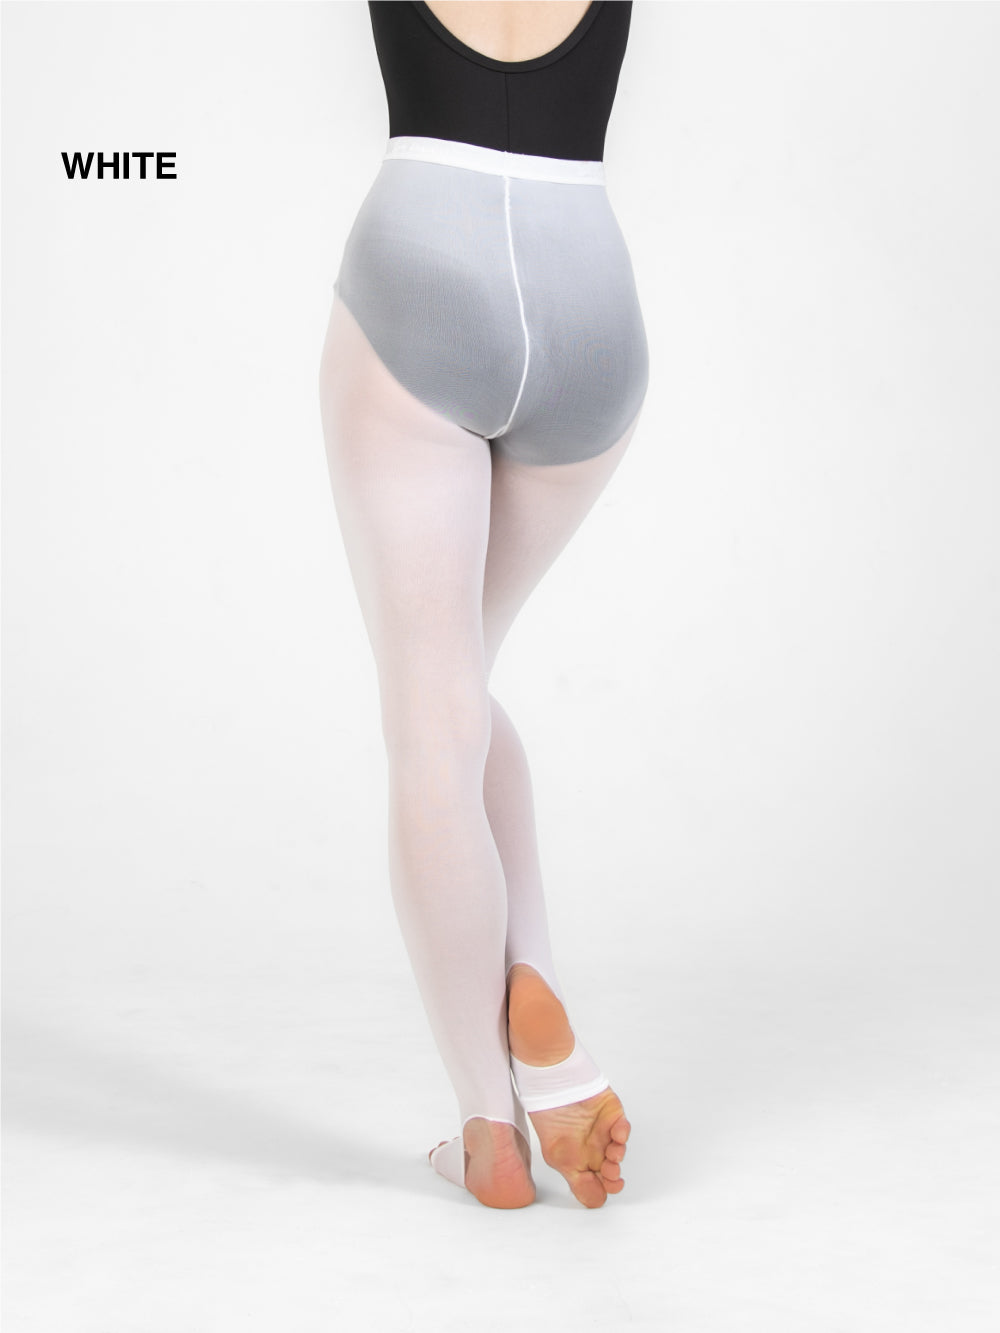 Body Wrappers A93 Stirrup Full Body Tights - MK Dancewear